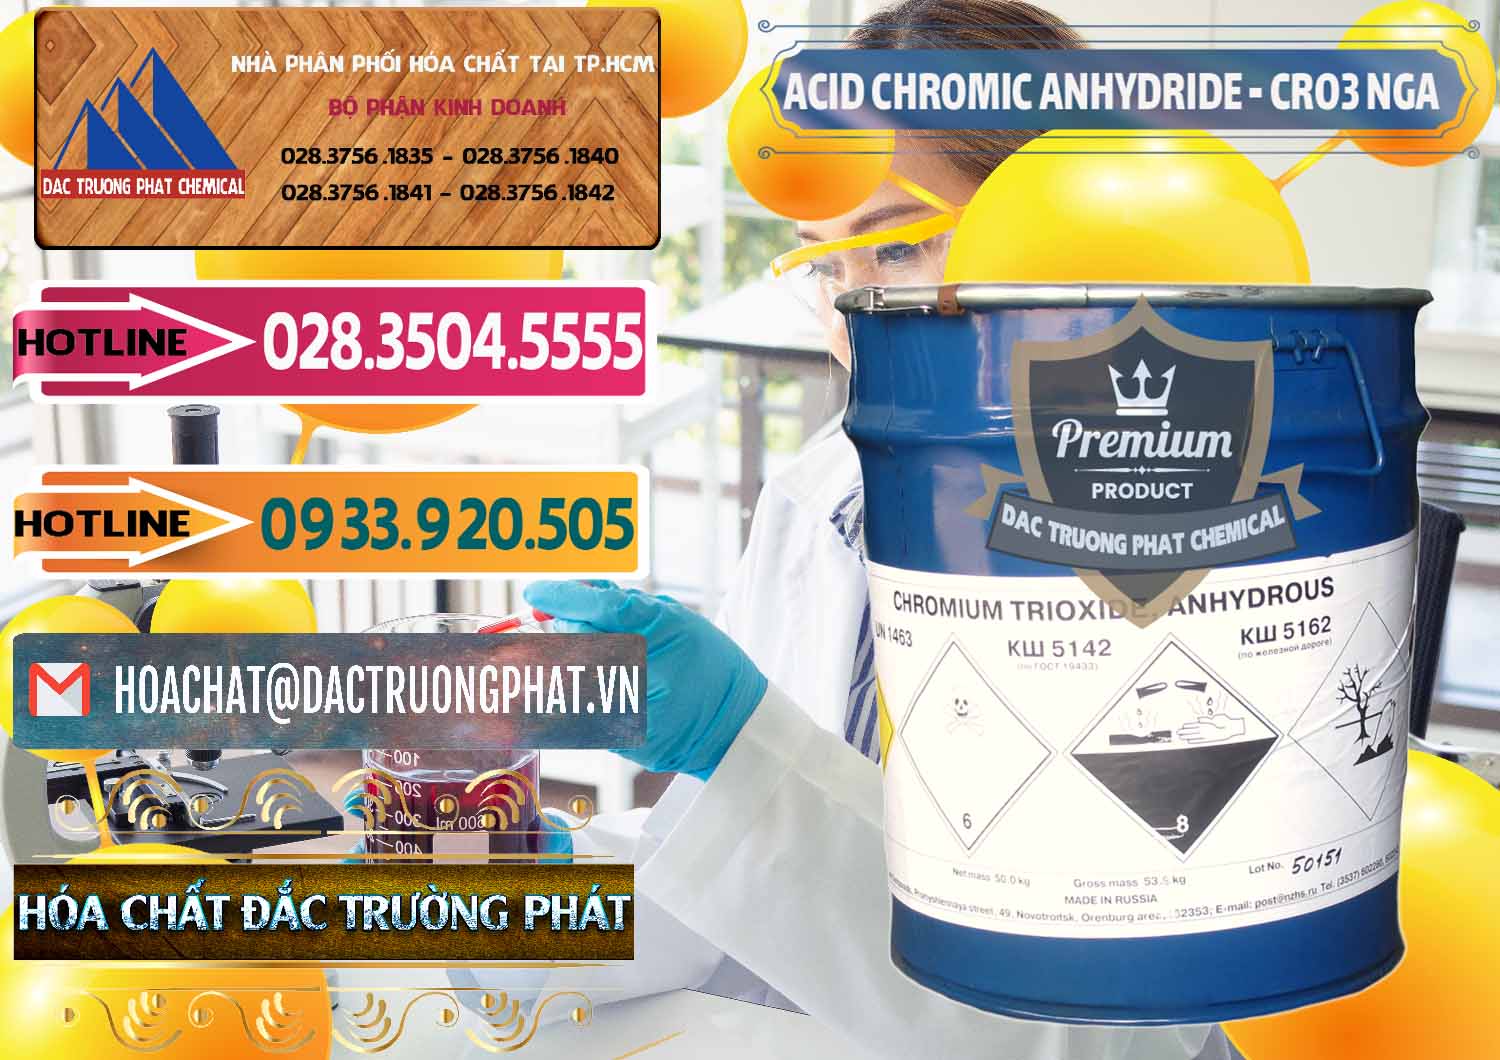 Phân phối - bán Acid Chromic Anhydride - Cromic CRO3 Nga Russia - 0006 - Cty chuyên kinh doanh và cung cấp hóa chất tại TP.HCM - dactruongphat.vn